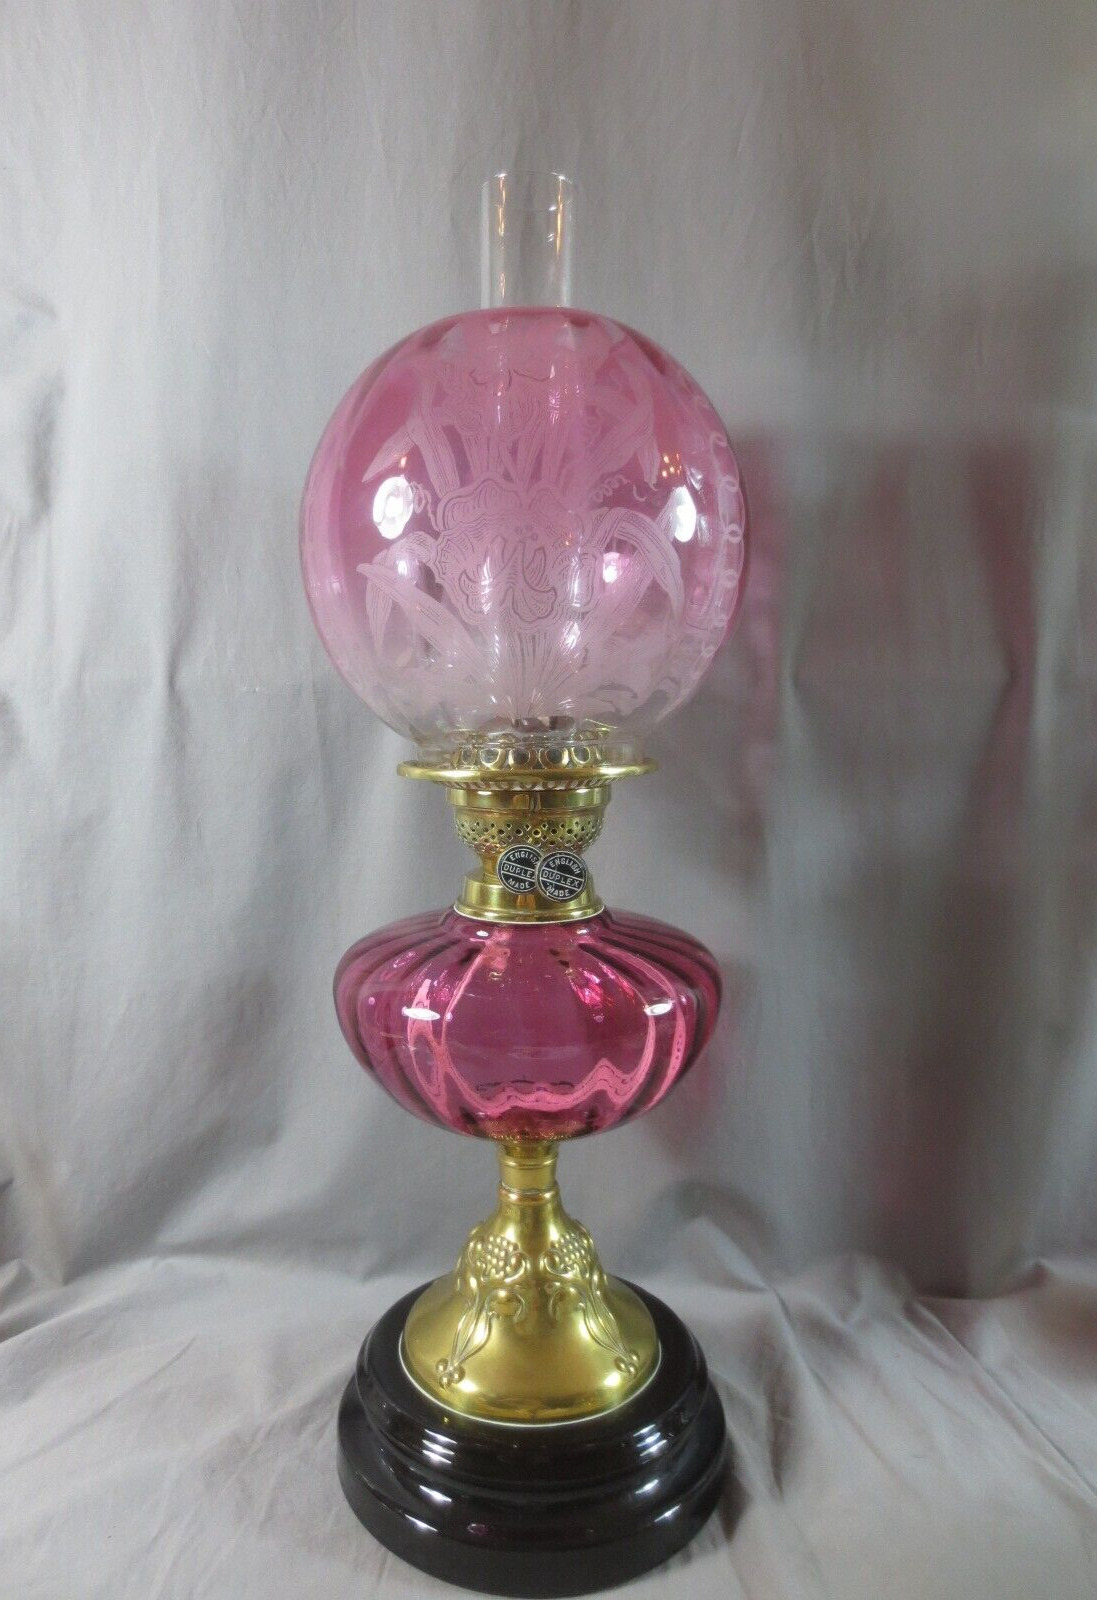 ORIGINAL ANTIQUE BRASS & CRANBERRY GLASS OIL LAMP  WITH ORIGINAL CRANBERRY SHADE